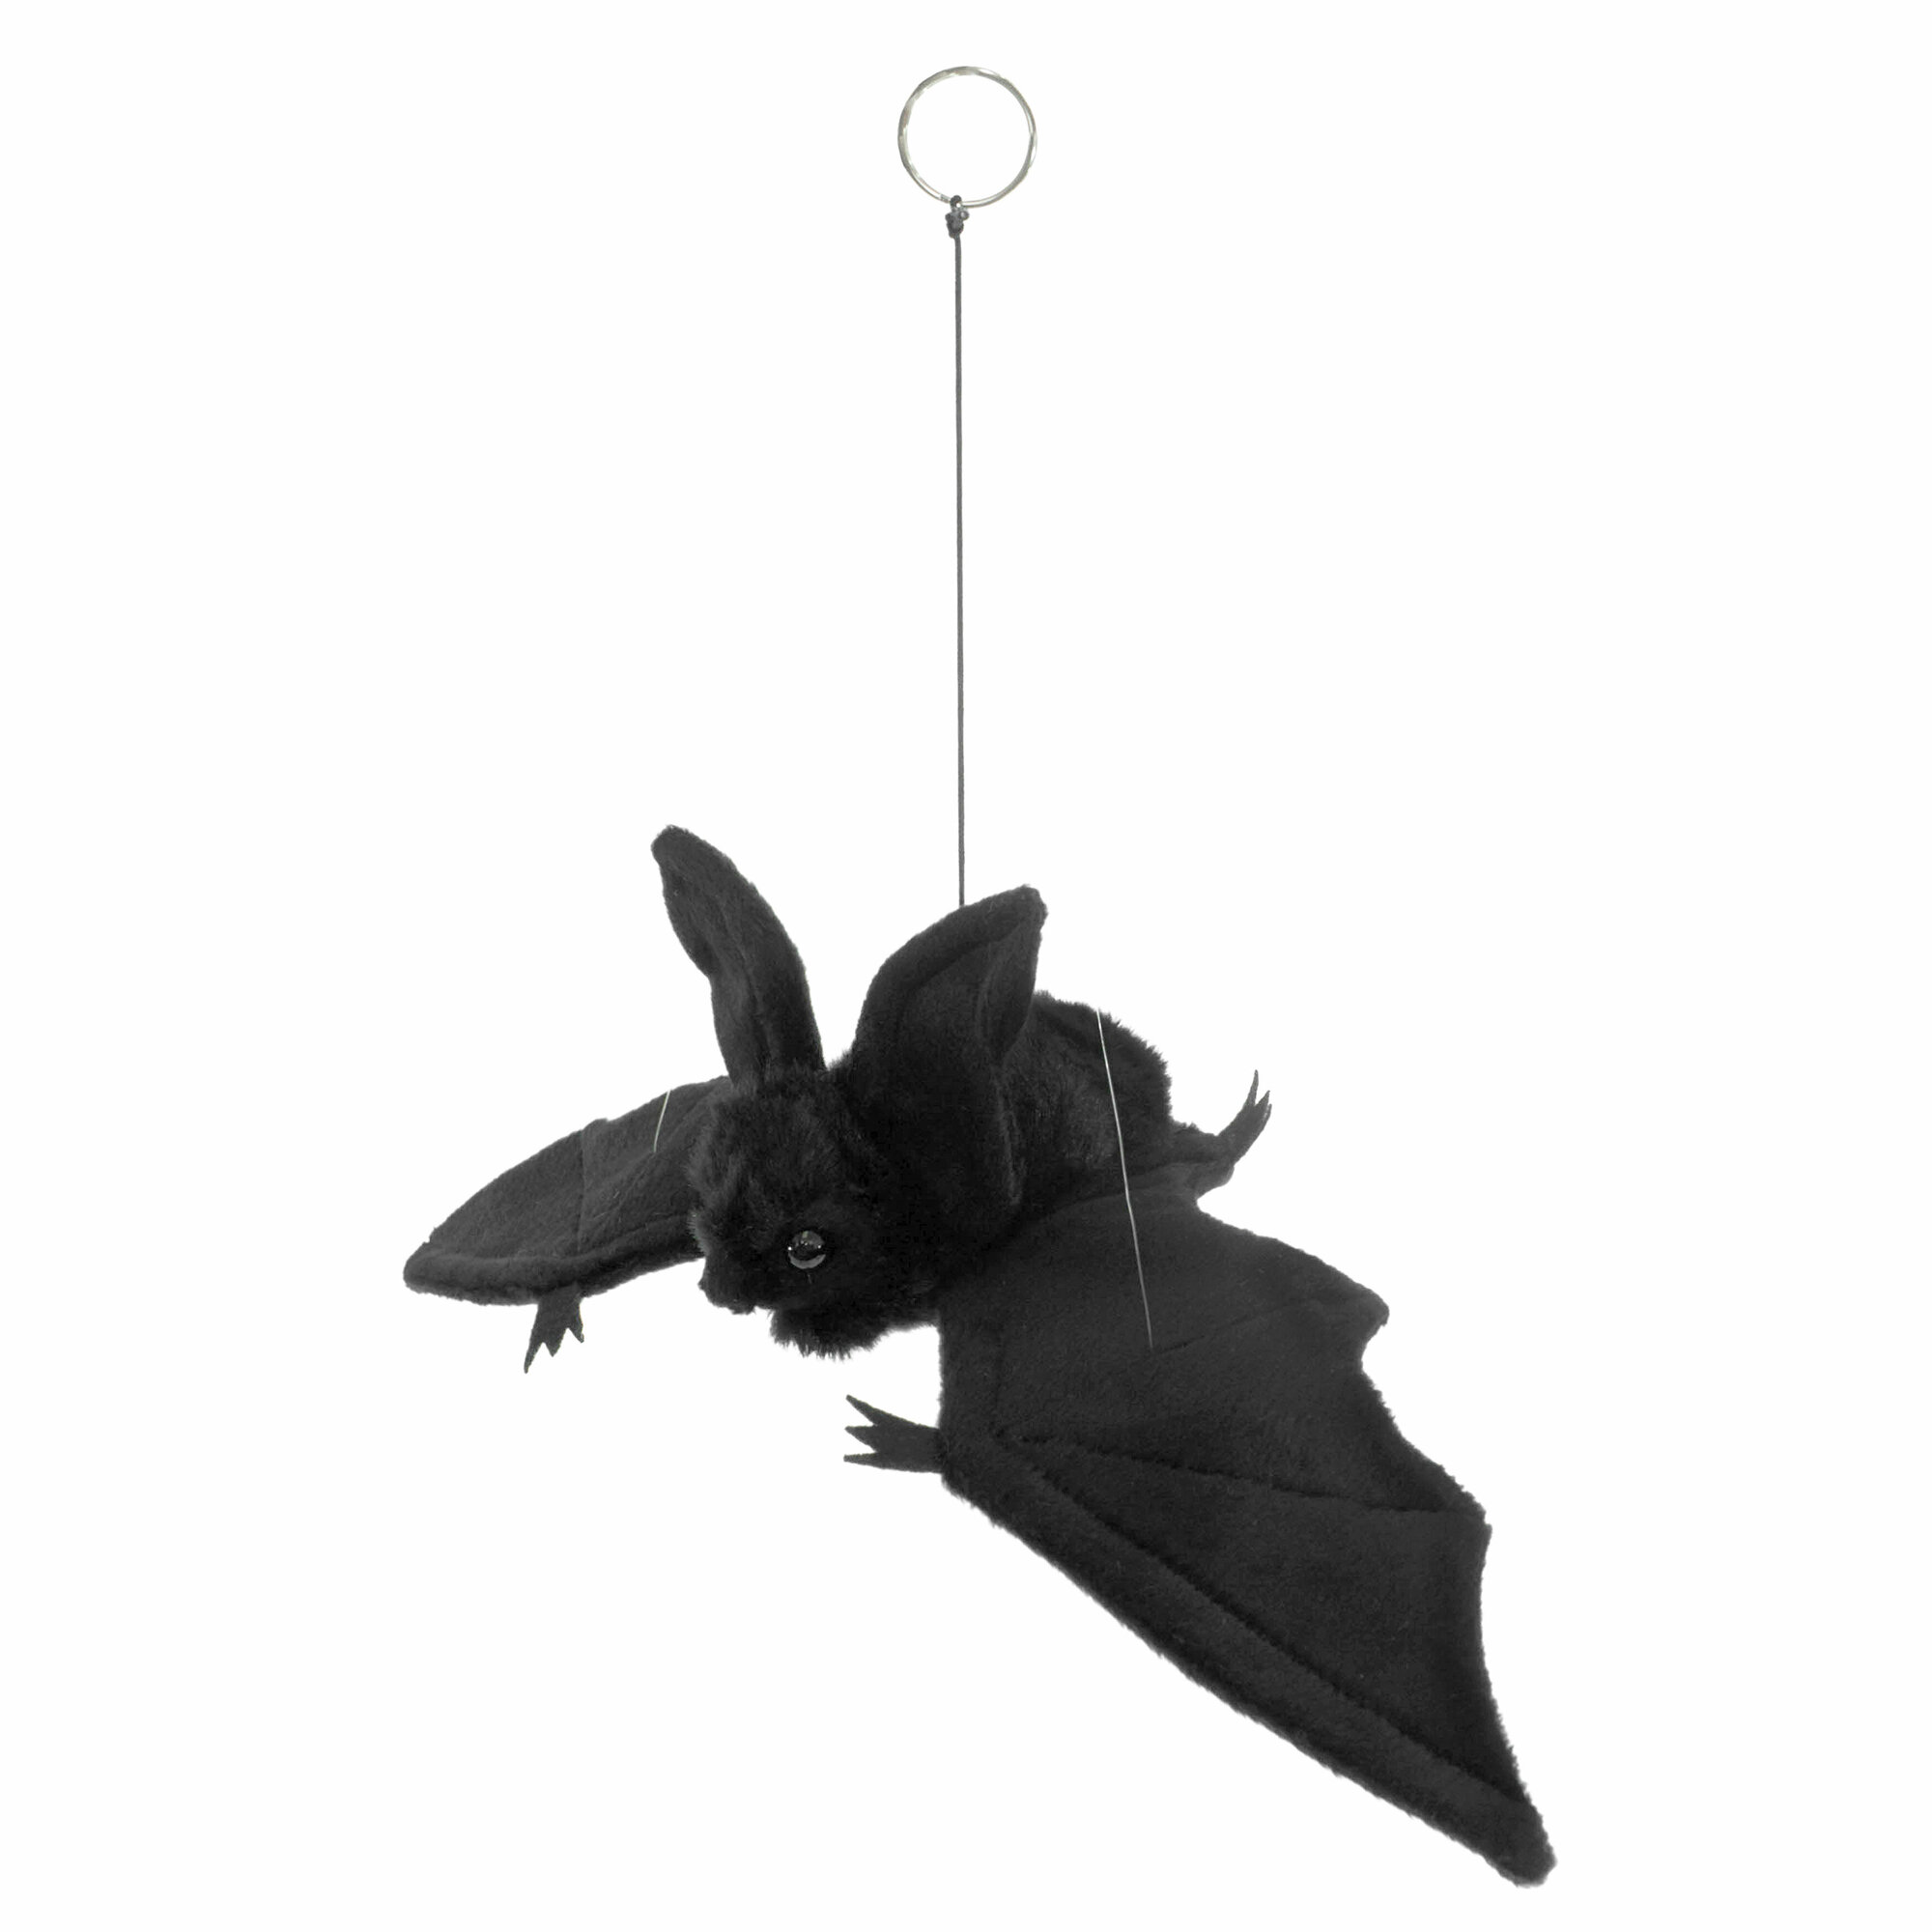 Реалистичная мягкая игрушка Hansa Creation, 4793 Мышь летучая, черная, 37 см